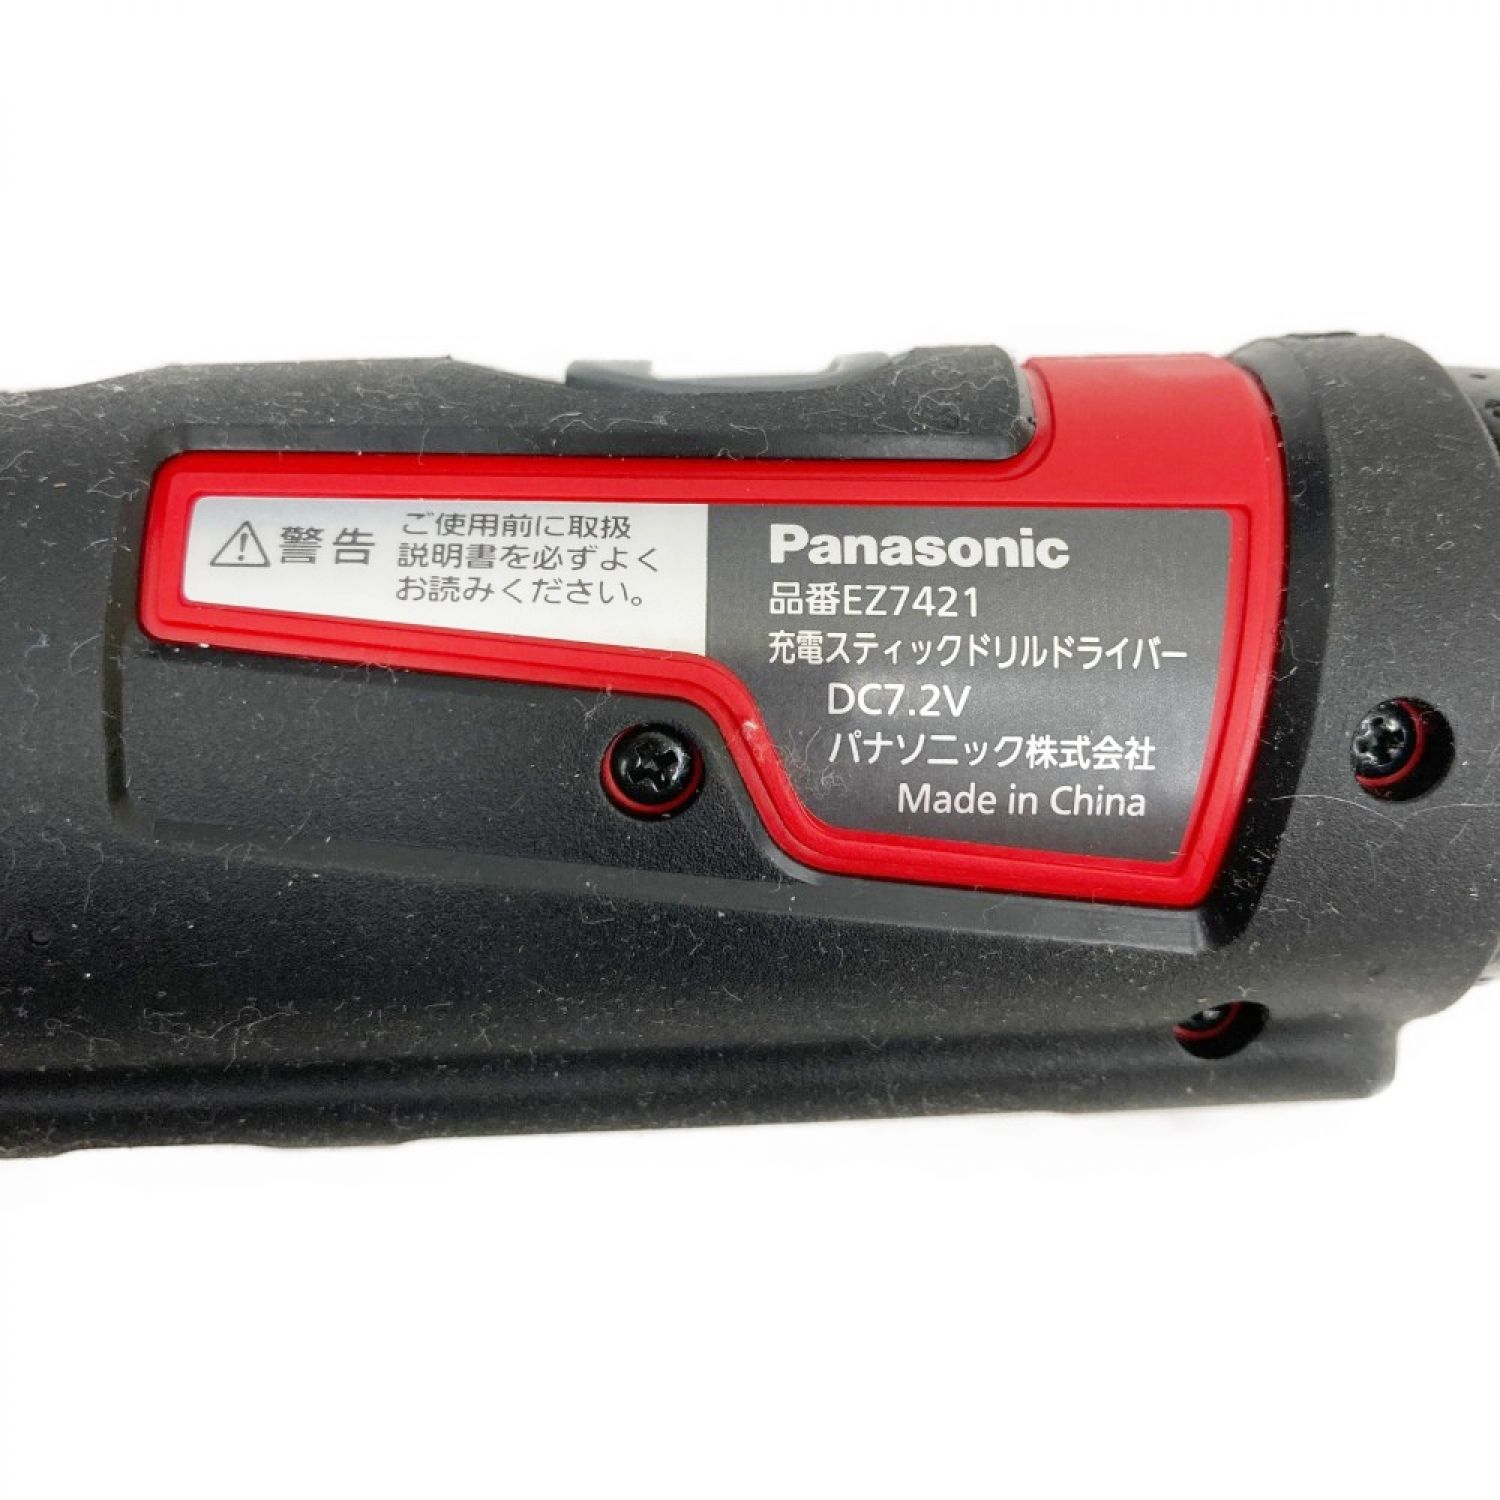 Panasonic パナソニック EZ7421LA2S-B 7.2V 充電スティックドリルドライバー 黒